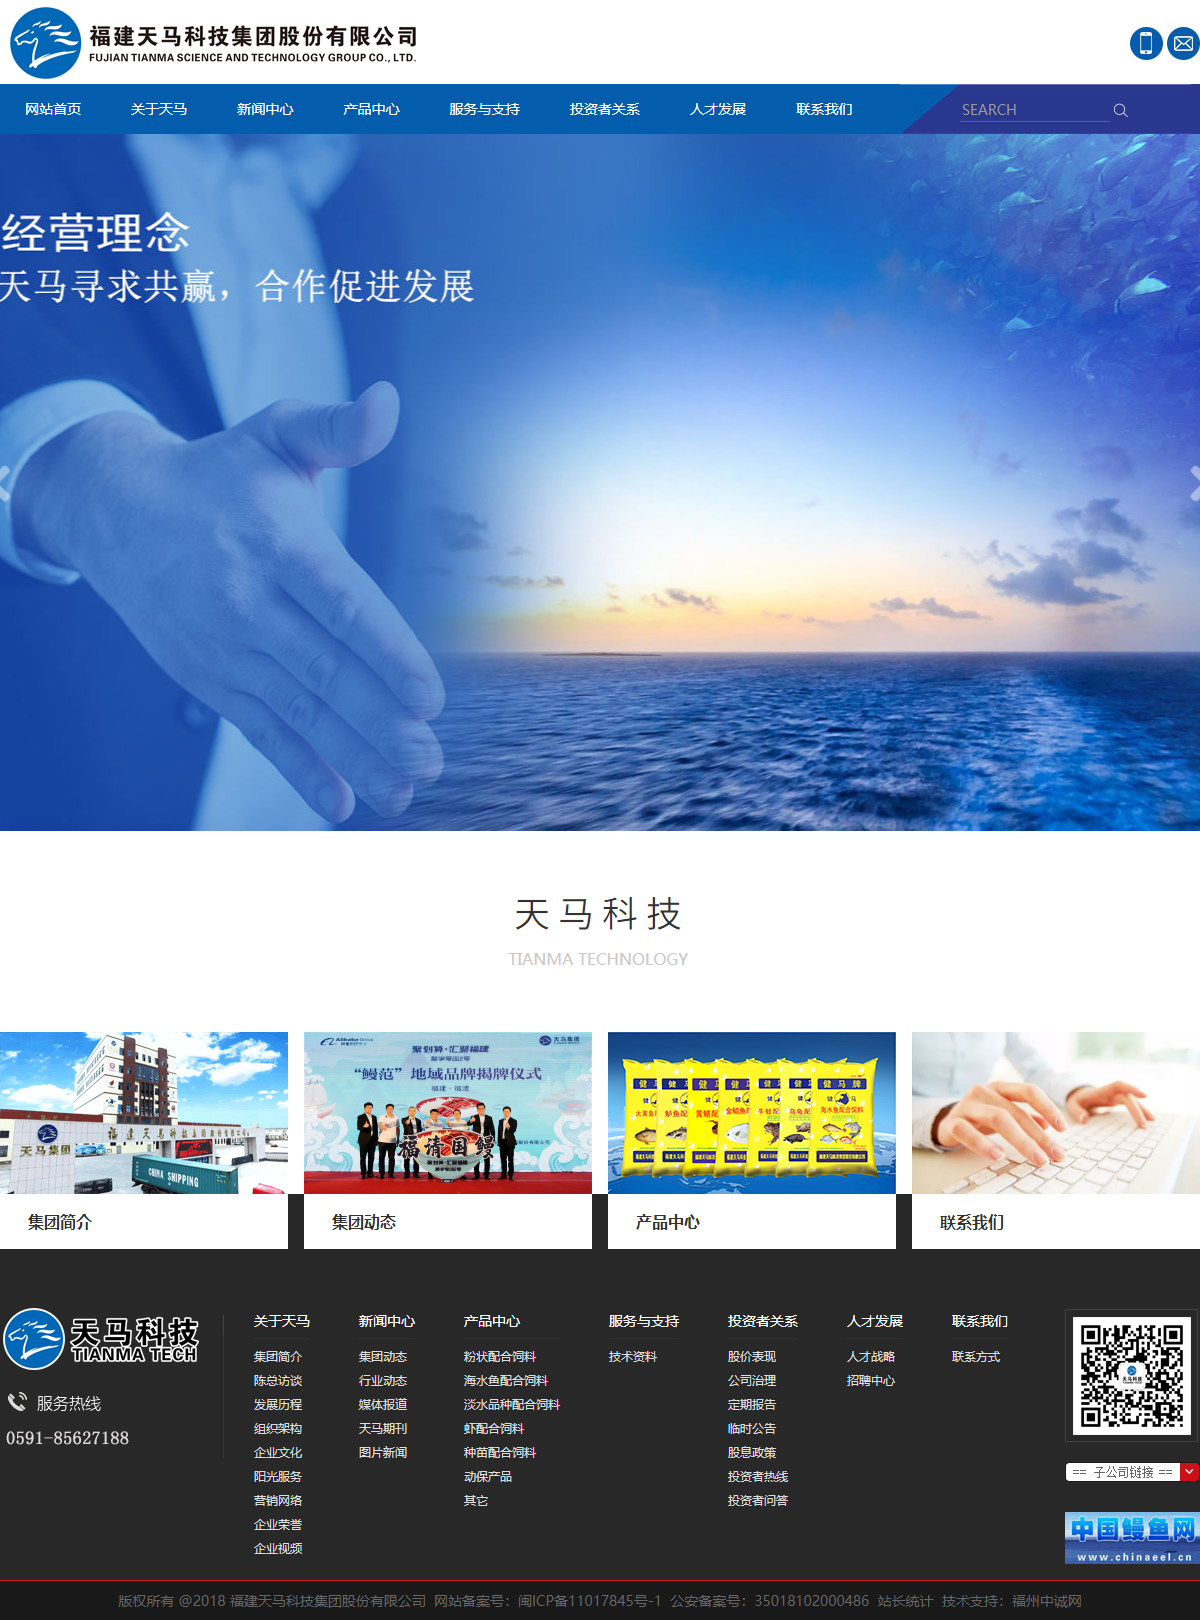 福建天马科技集团股份有限公司网站案例